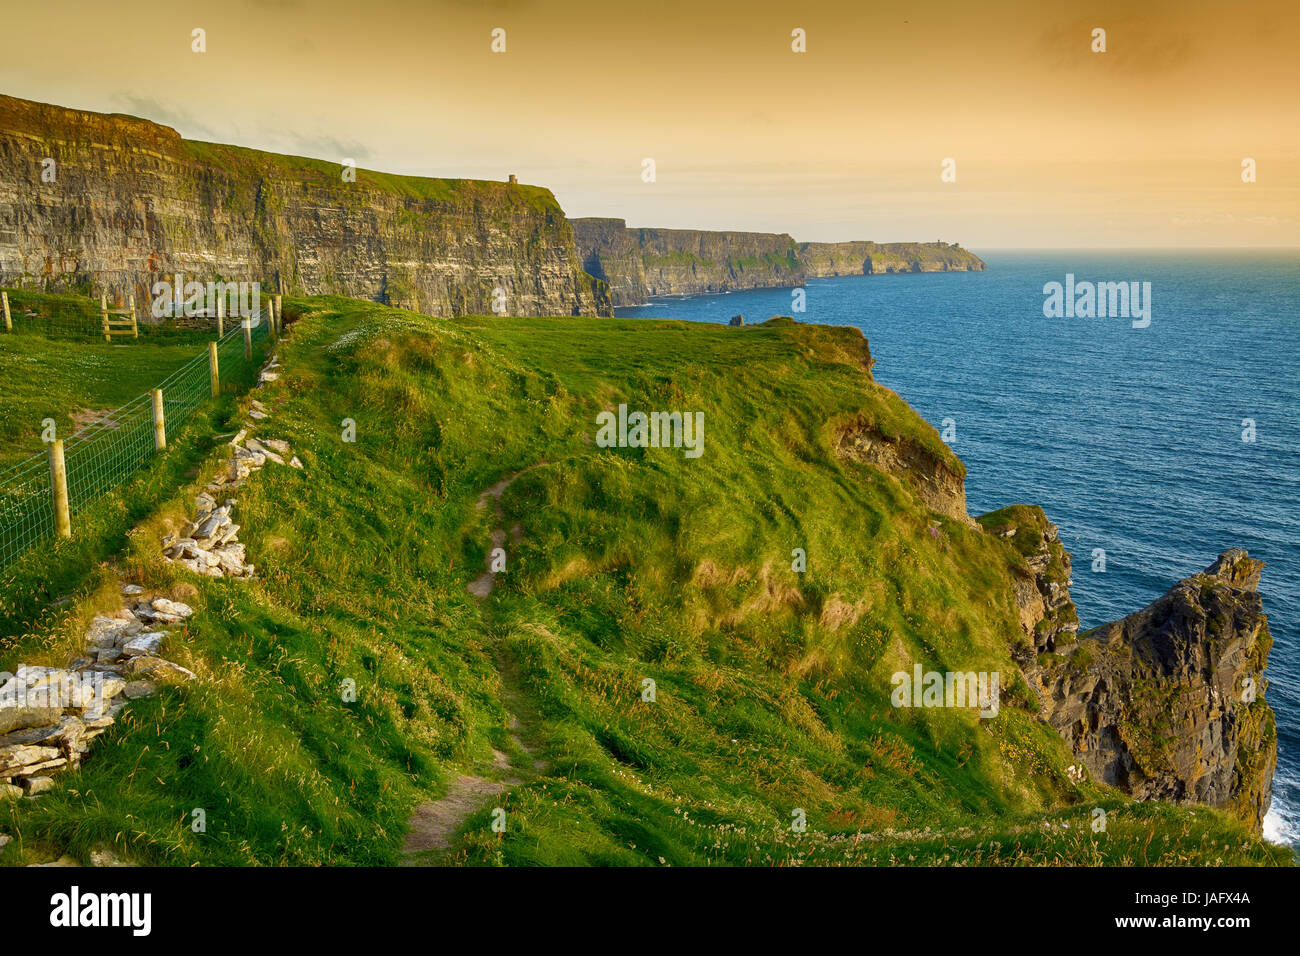 Vues épique des falaises de Moher dans le comté de Clare en Irlande. L'Irlande est l'attraction touristique numéro 1. belle campagne irlandaise pittoresque le long du paysage Banque D'Images